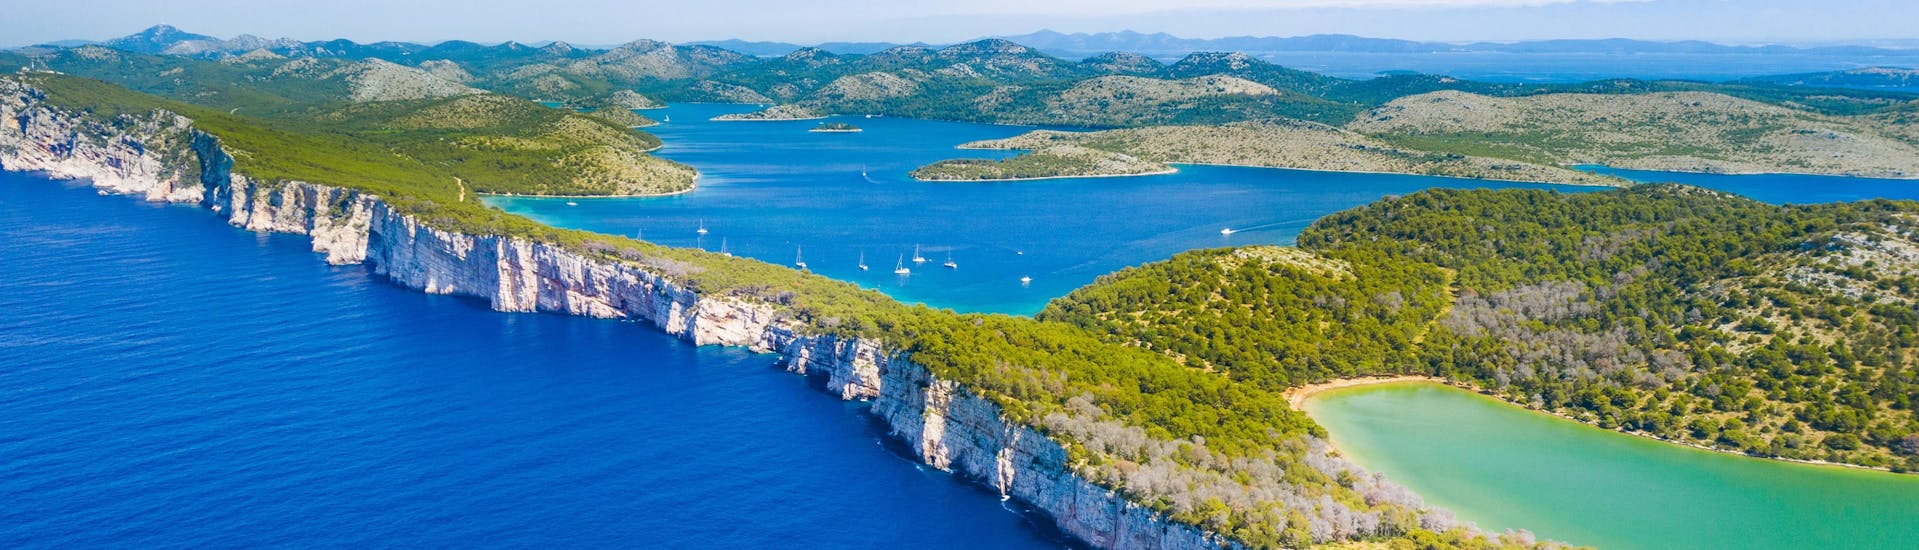 Le scogliere della splendida isola di Dugi Otok, che potrete scoprire con una gita in barca.